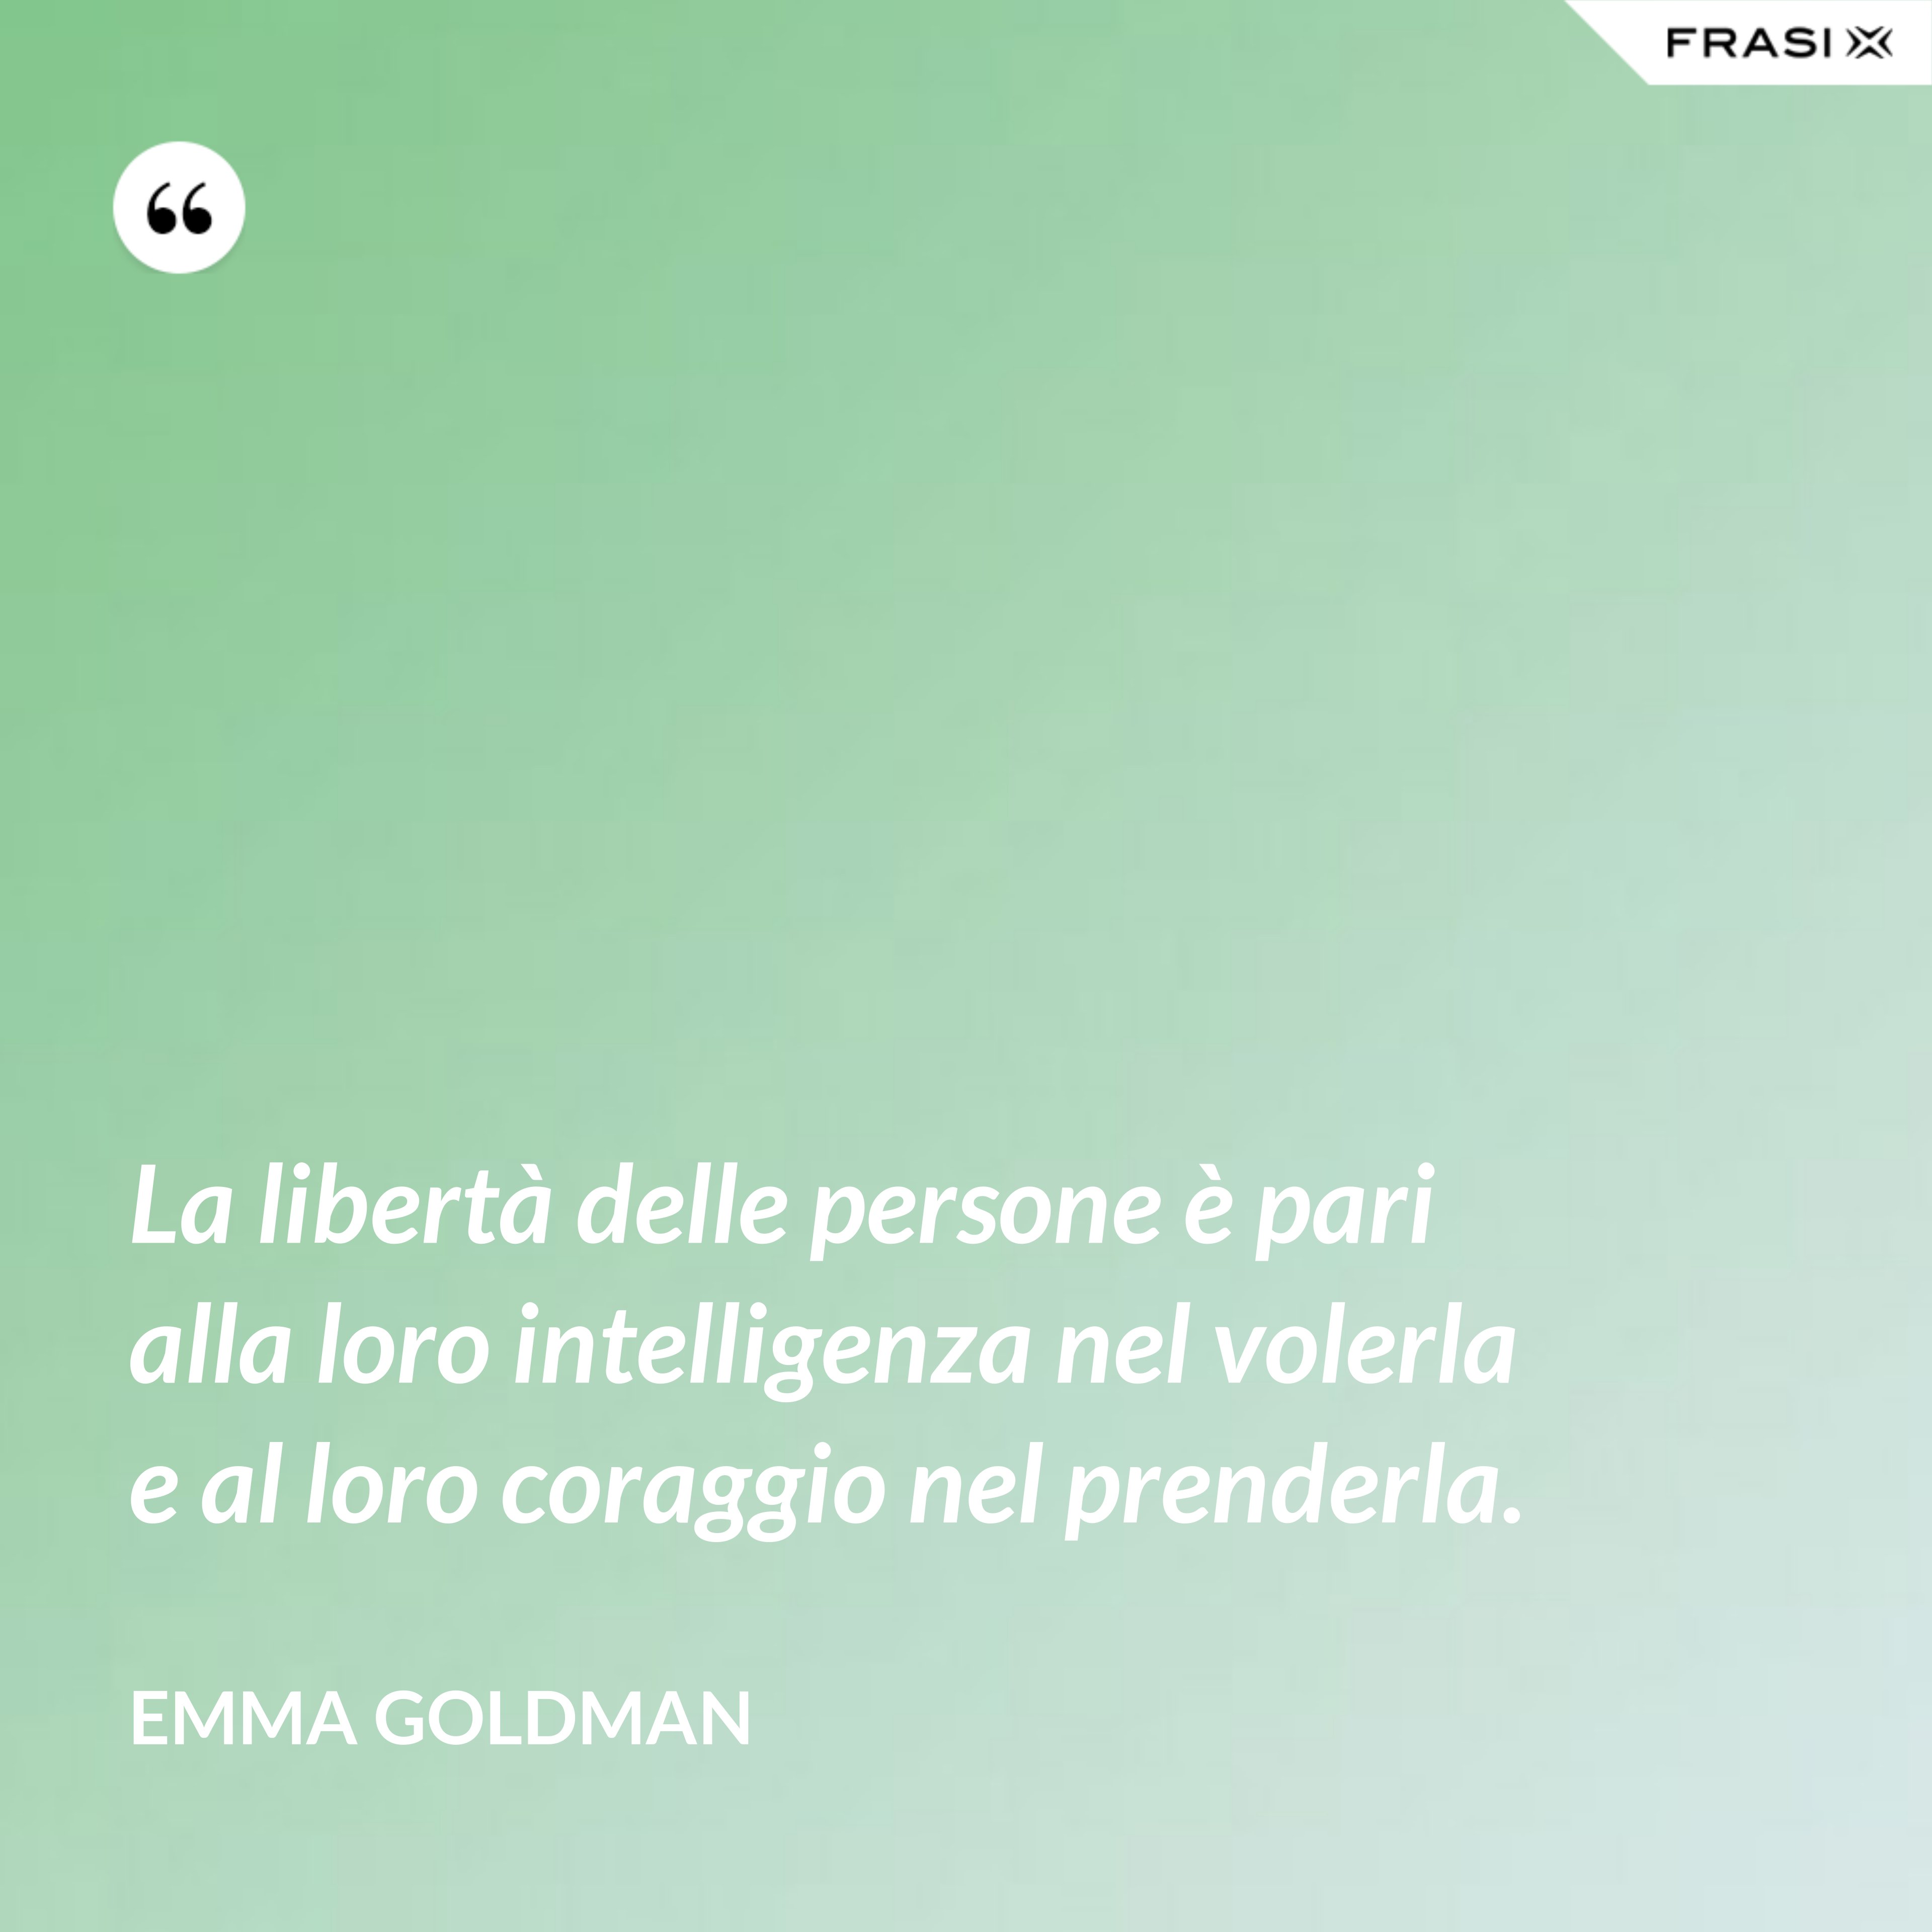 La libertà delle persone è pari alla loro intelligenza nel volerla e al loro coraggio nel prenderla. - Emma Goldman